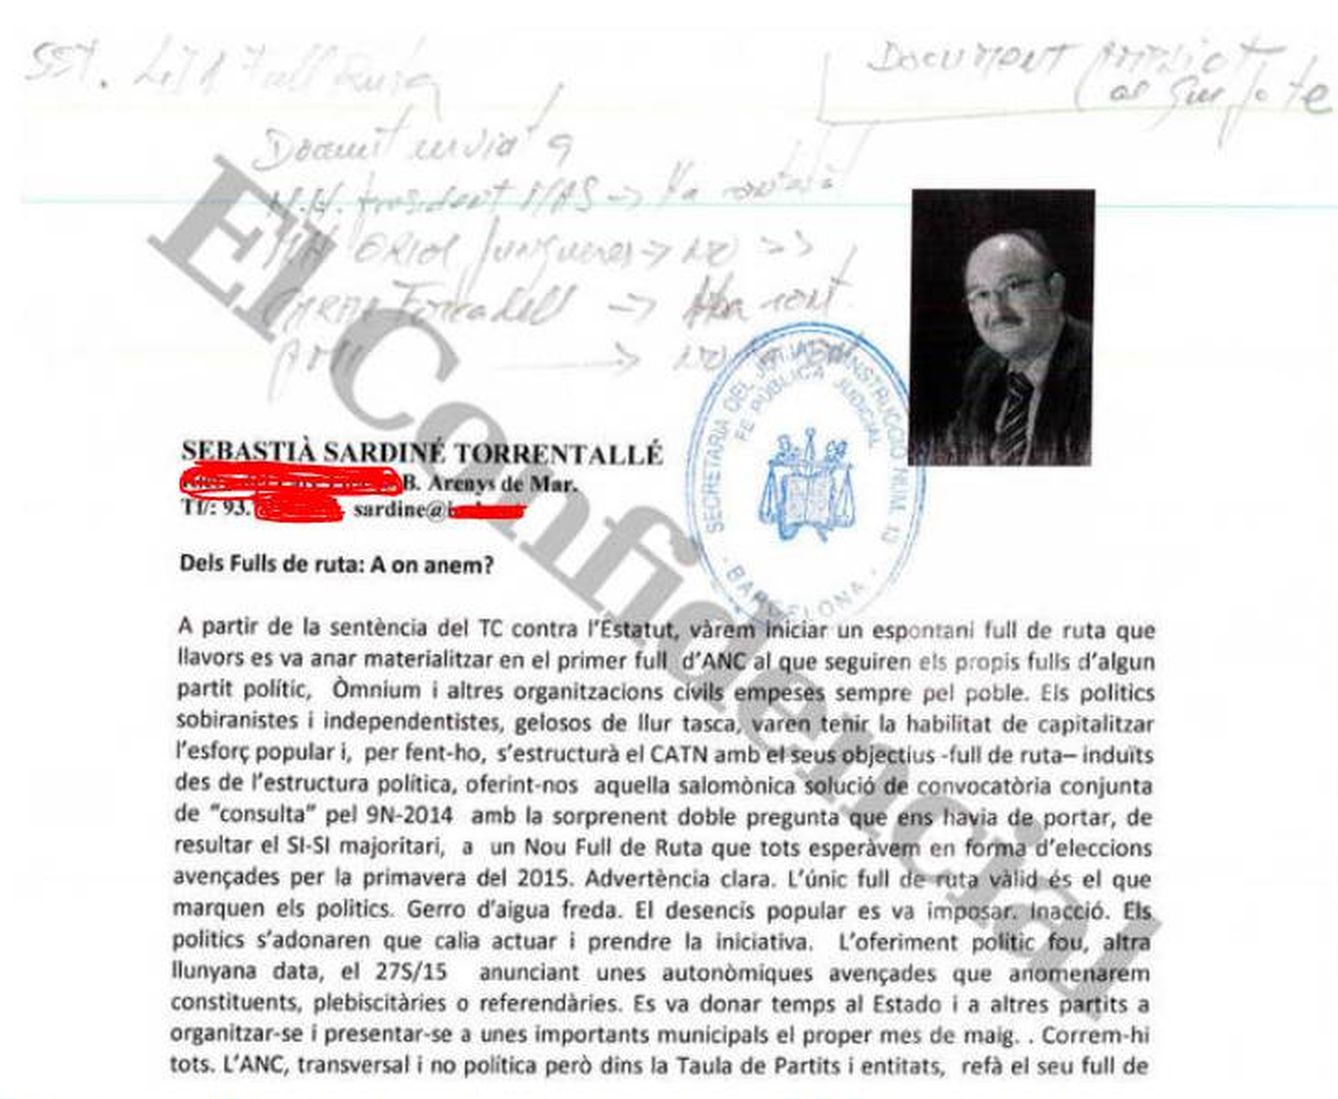 Anotaciones a mano de Carlos Viver para enviar borradores de leyes a prohombres del 'procés'